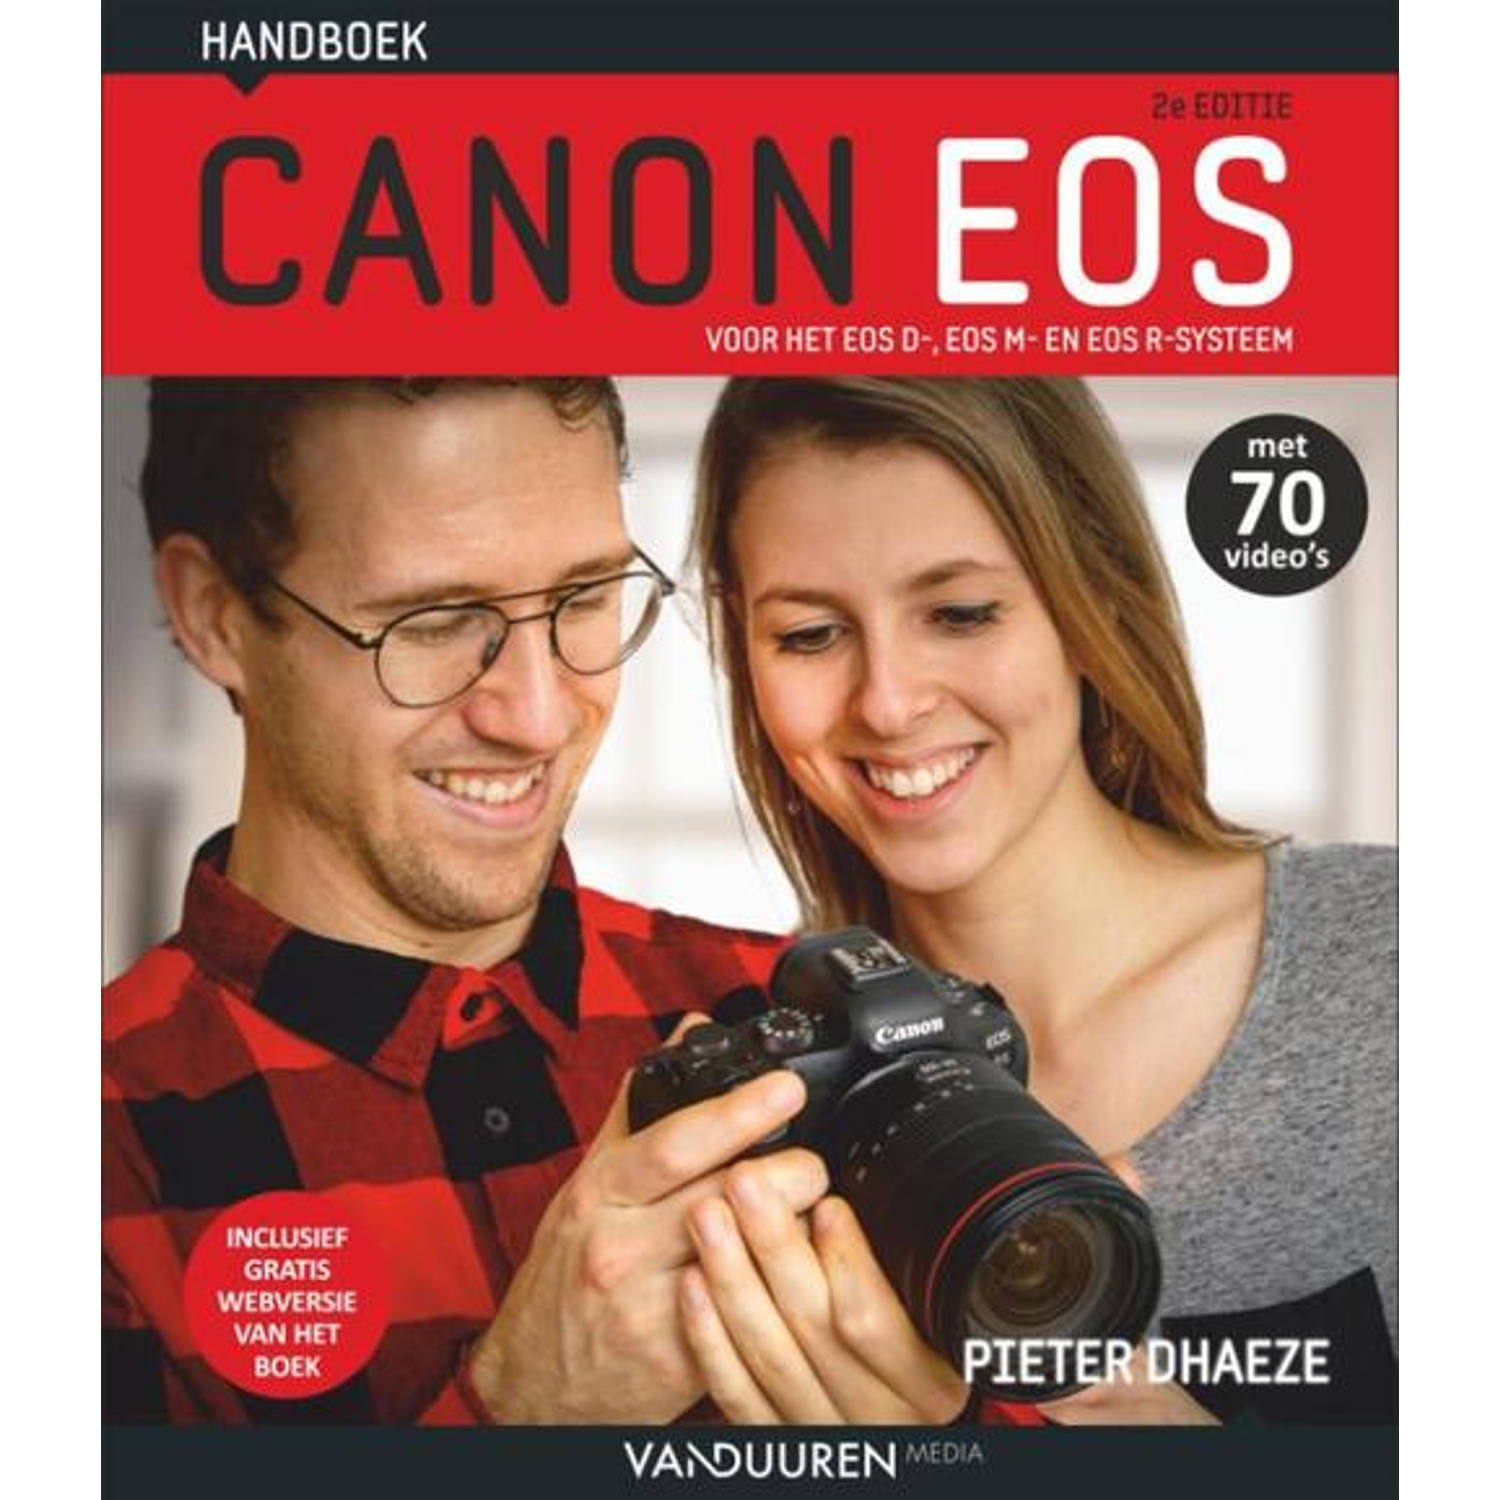 Handboek Canon Eos